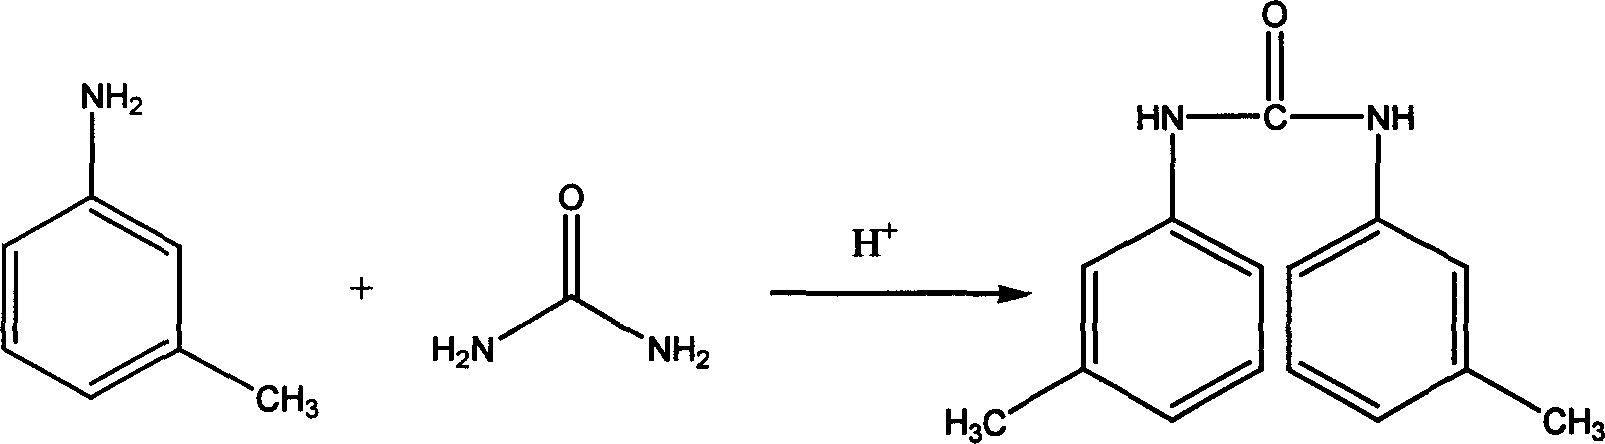 Water phase high pressure method for preparing N,N'-di (m-tolyl) urea